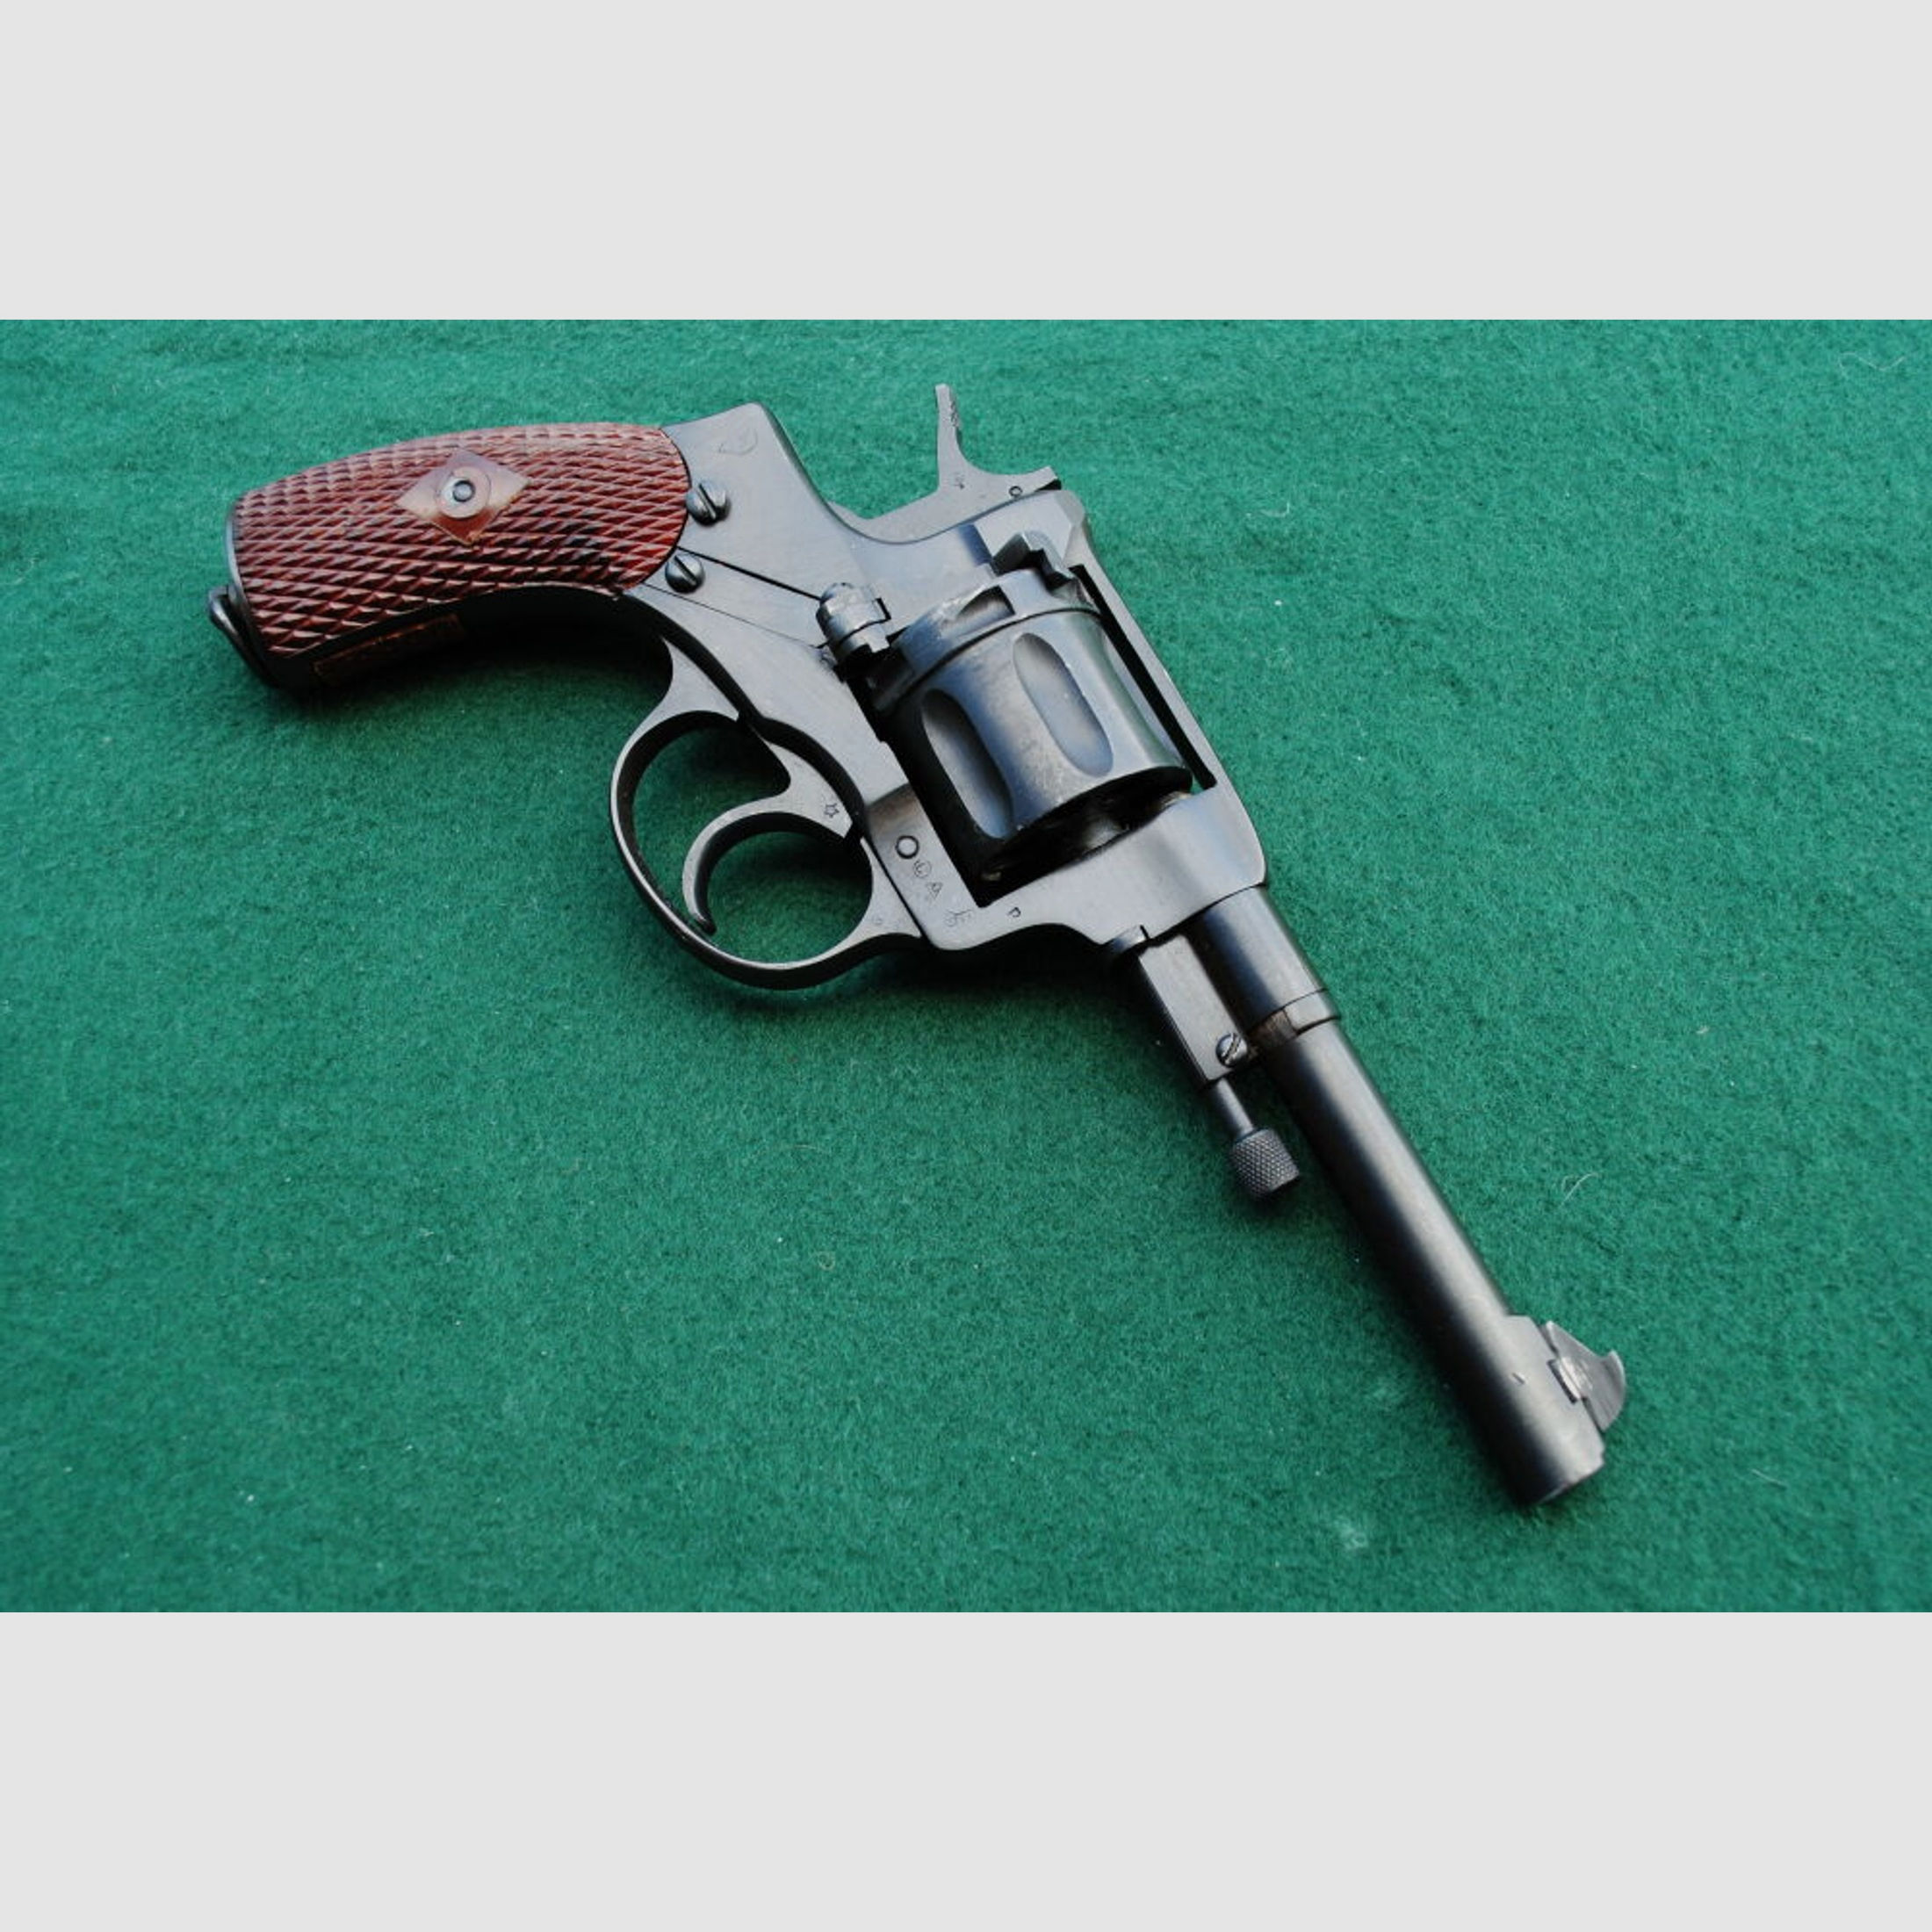 russischer Nagant Revolver Modell 1895, Baujahr 1941, Offiziersmodell